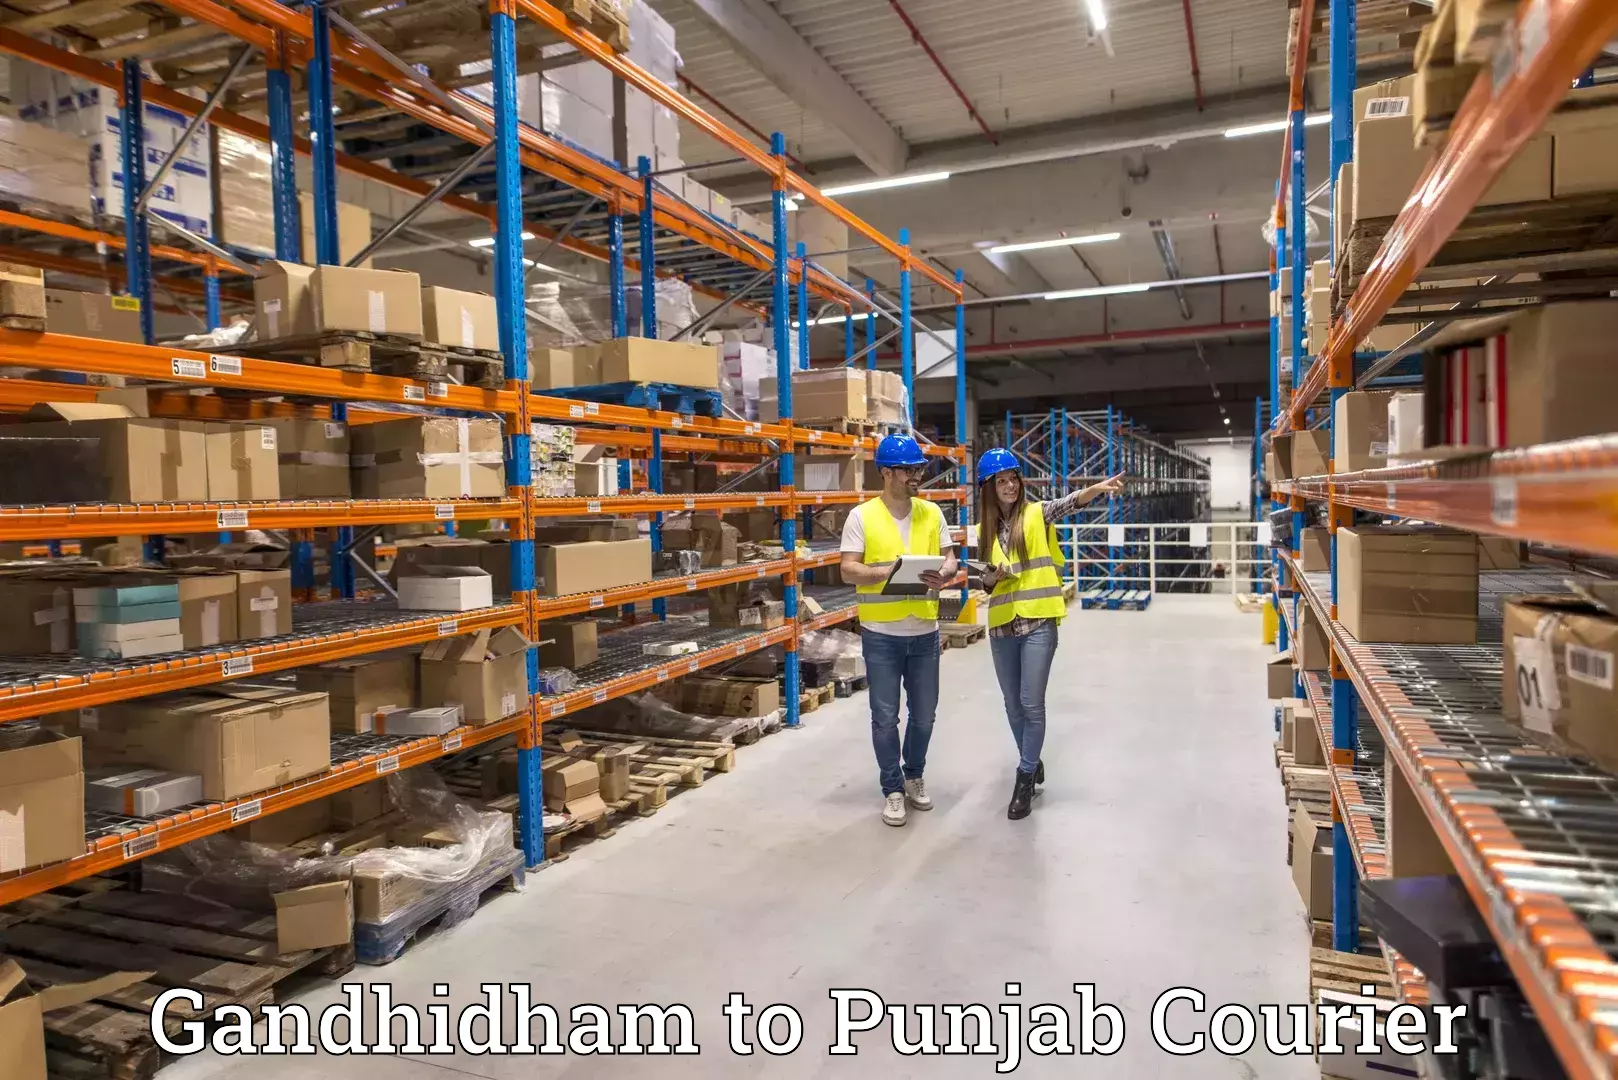 Customer-oriented courier services Gandhidham to Rajpura